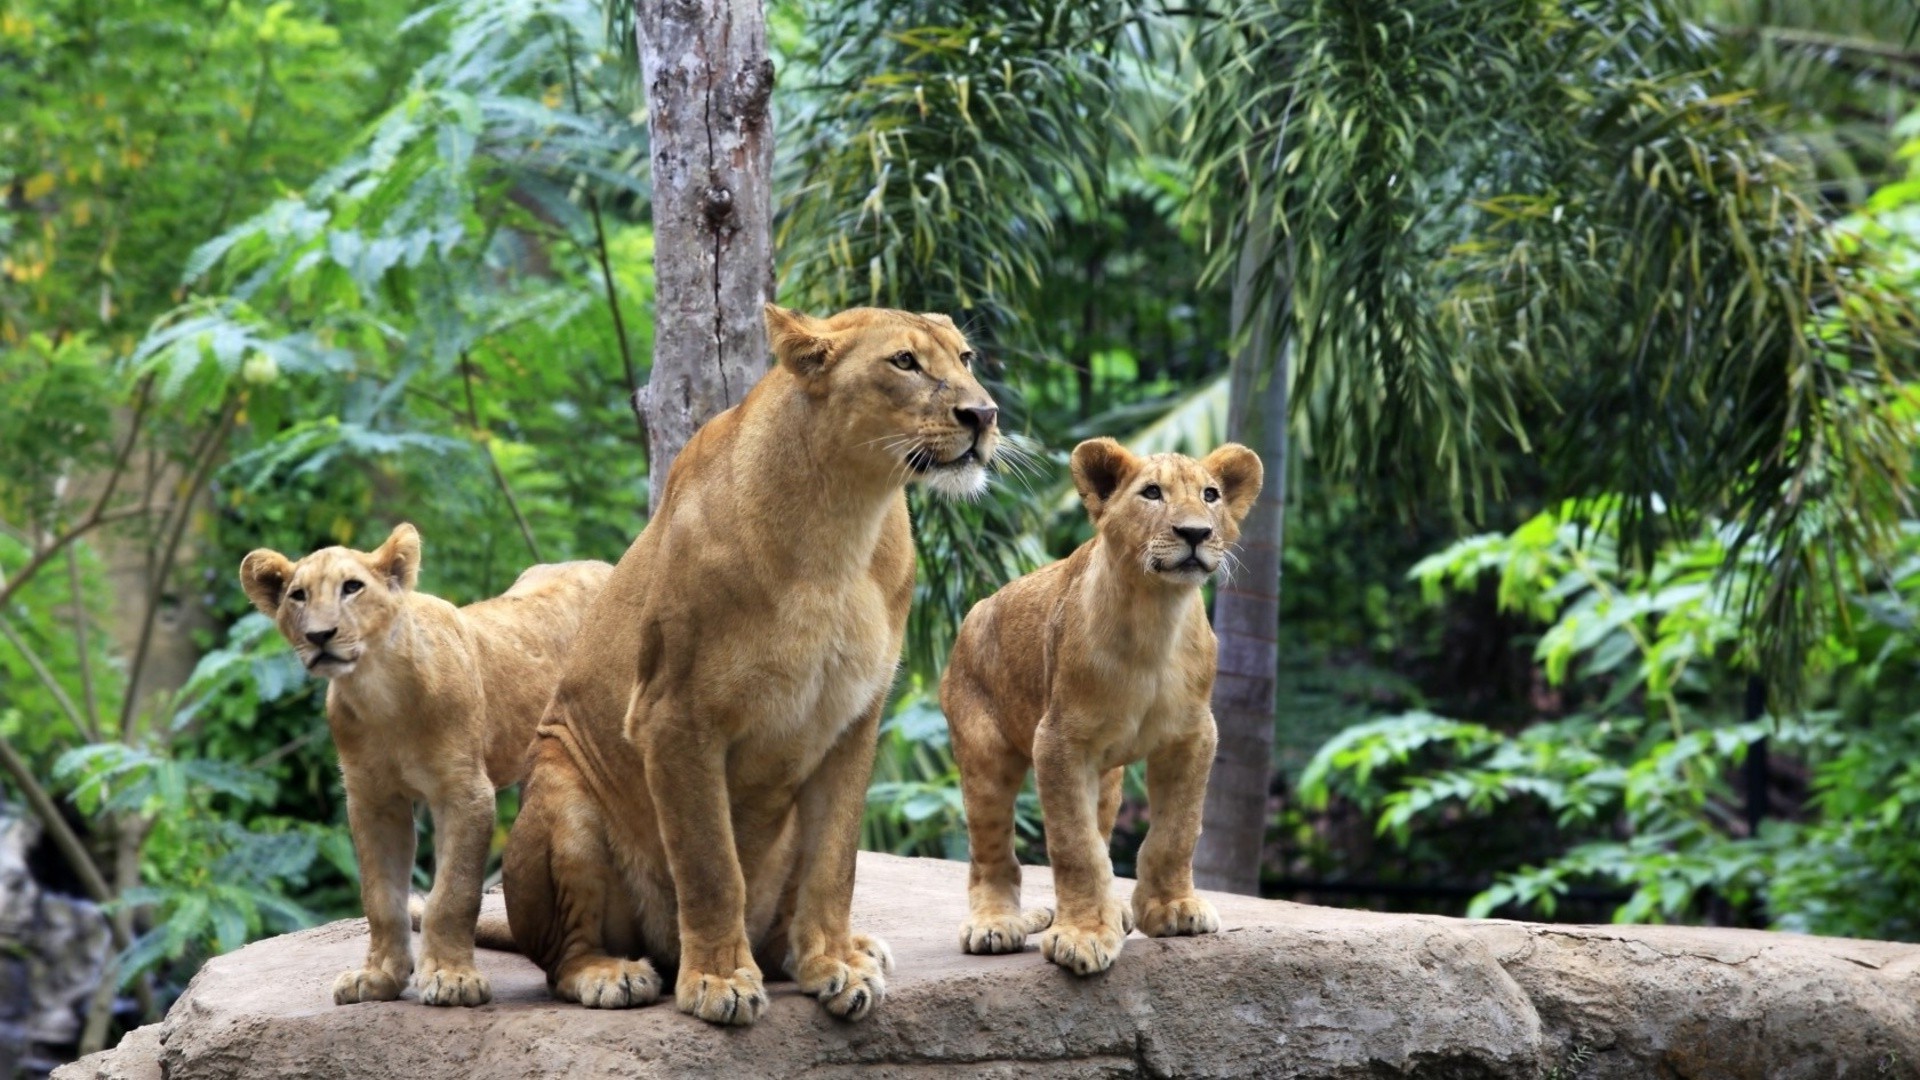 львы млекопитающее природа дикой природы животное трава мех зоопарк дикий кошка лев